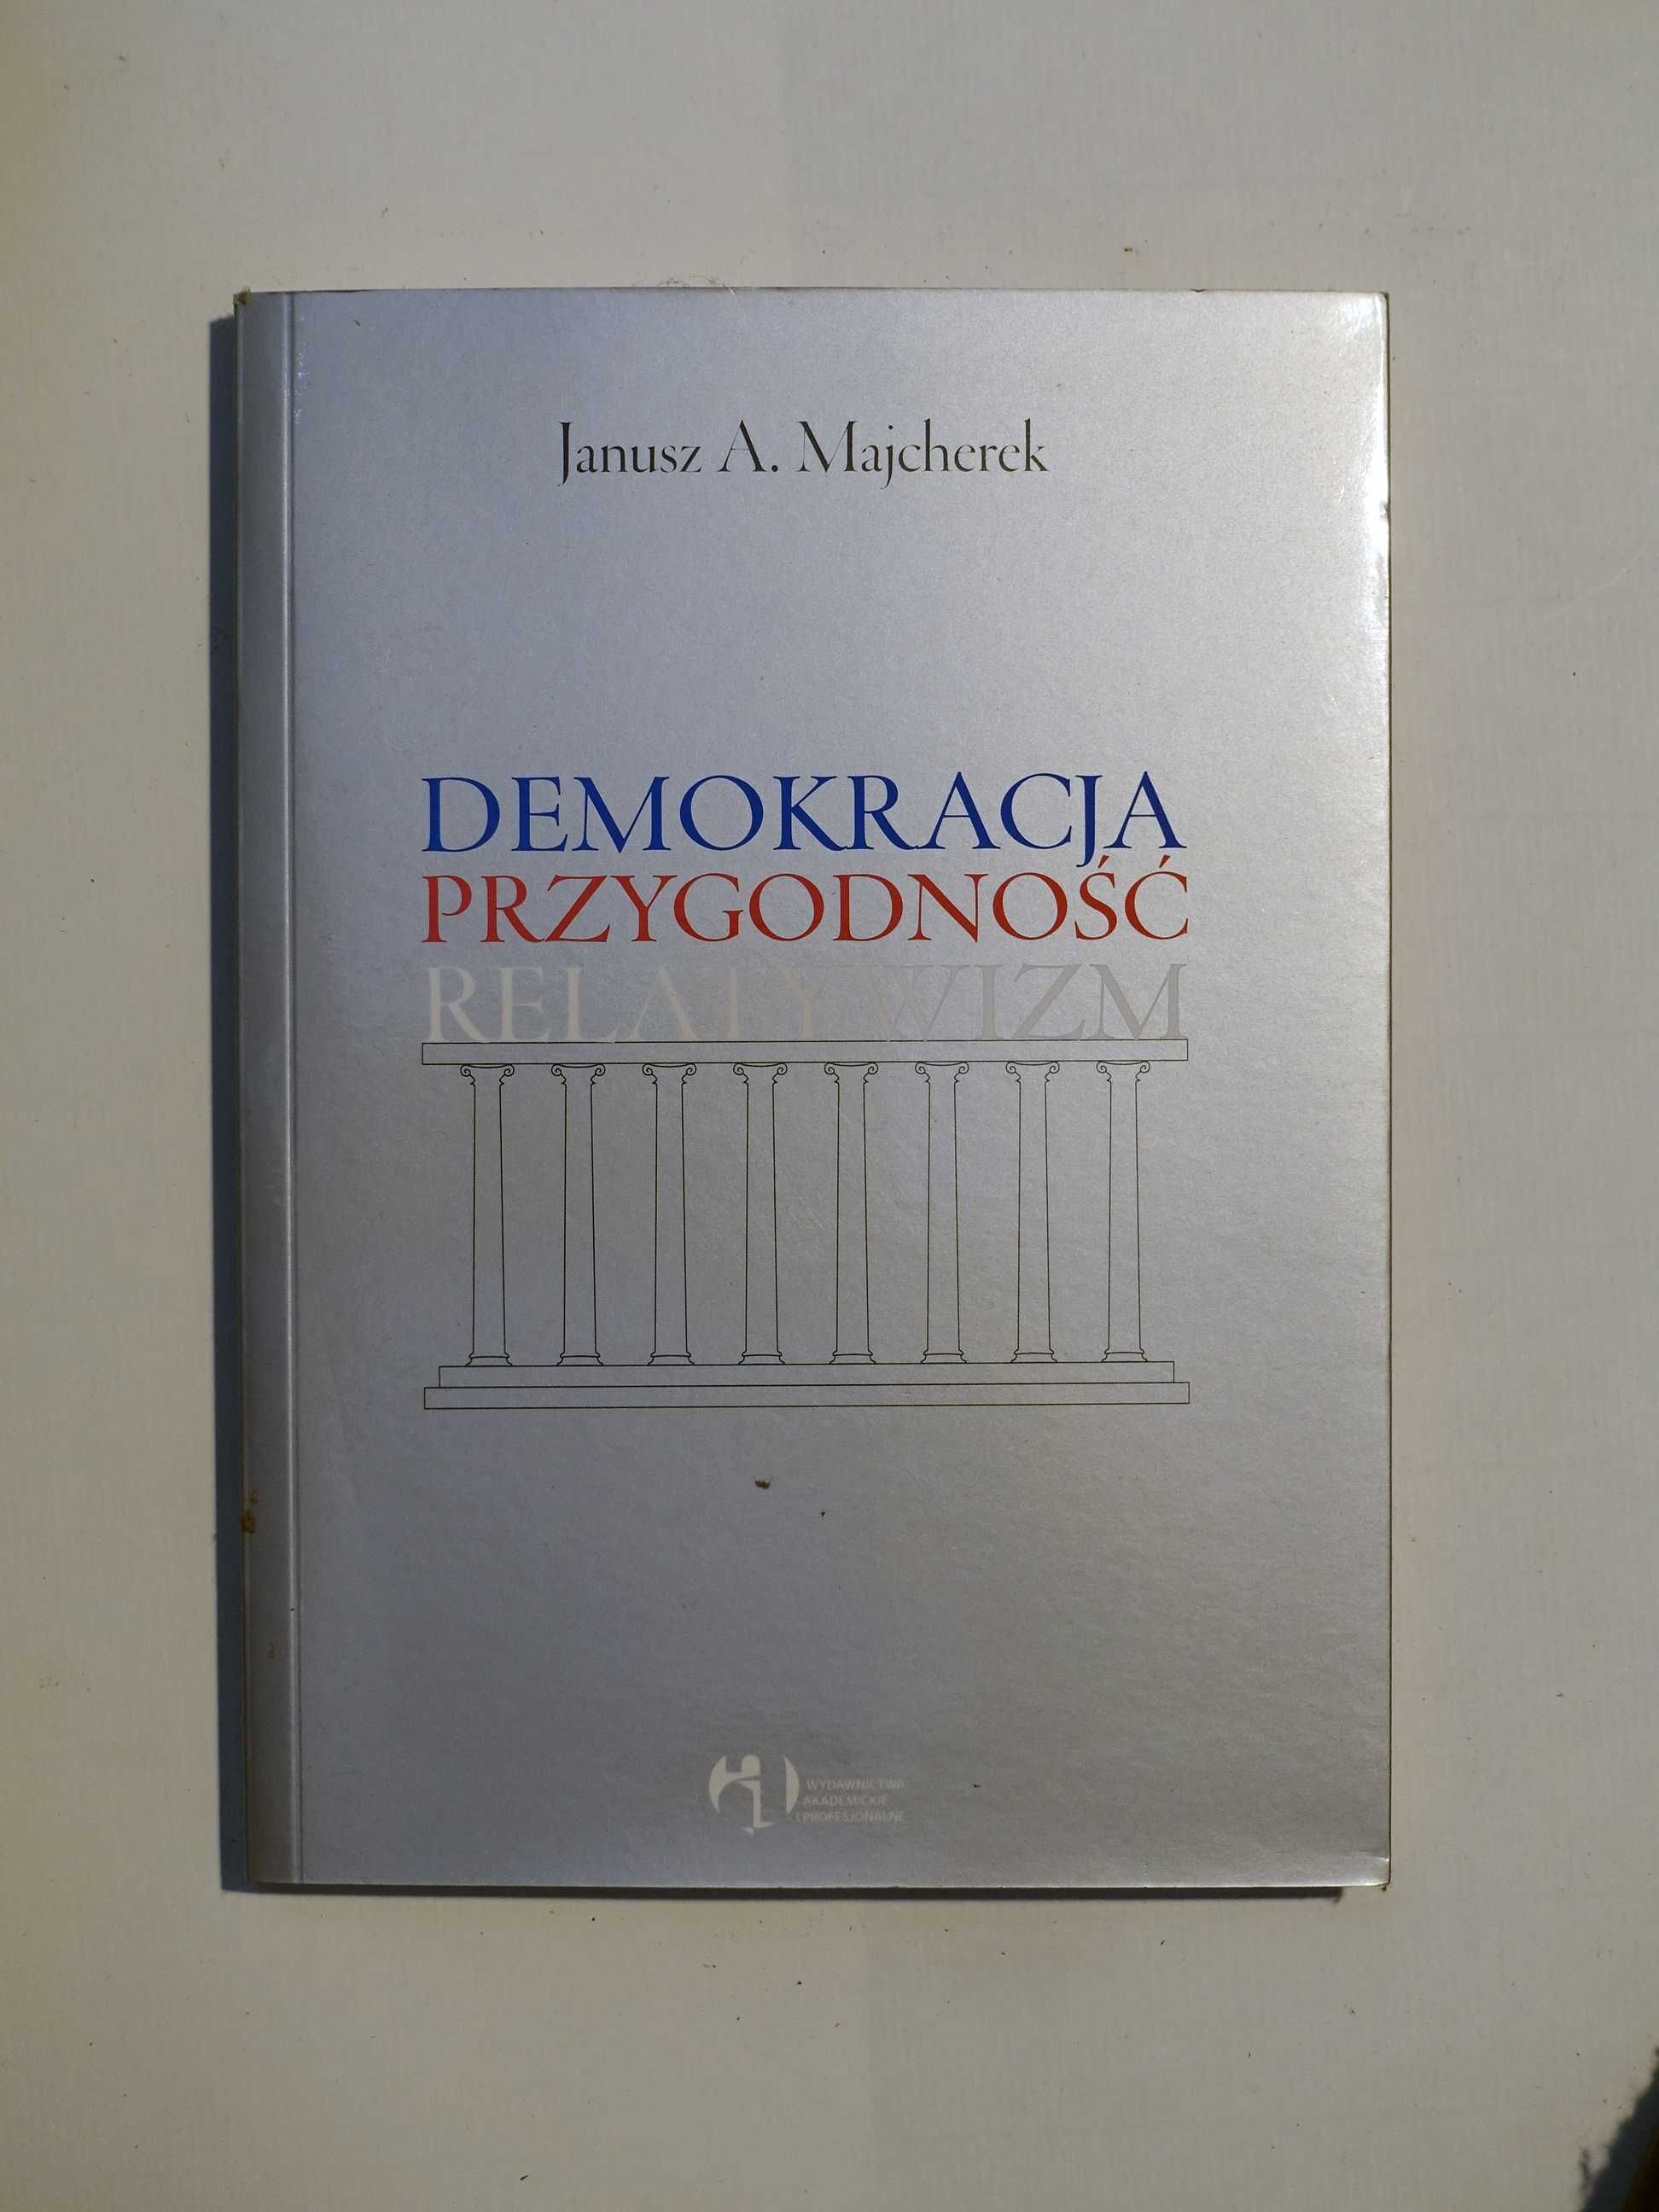 Janusz A. Majcherek "Demokracja, przygodność, relatywizm"